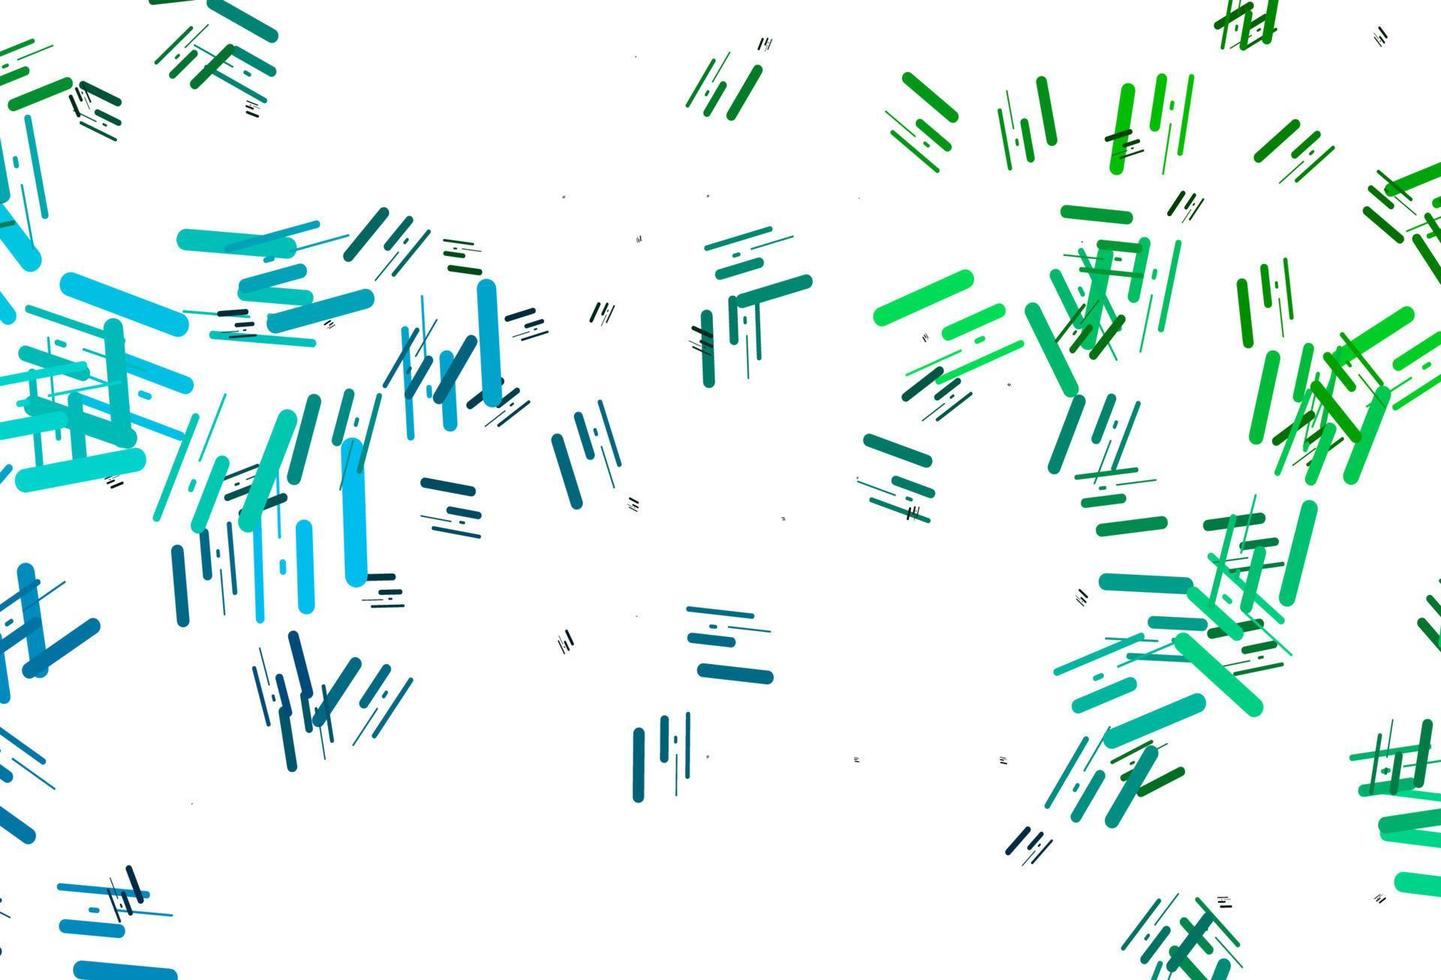 lichtblauwe, groene vectorlay-out met vlakke lijnen. vector